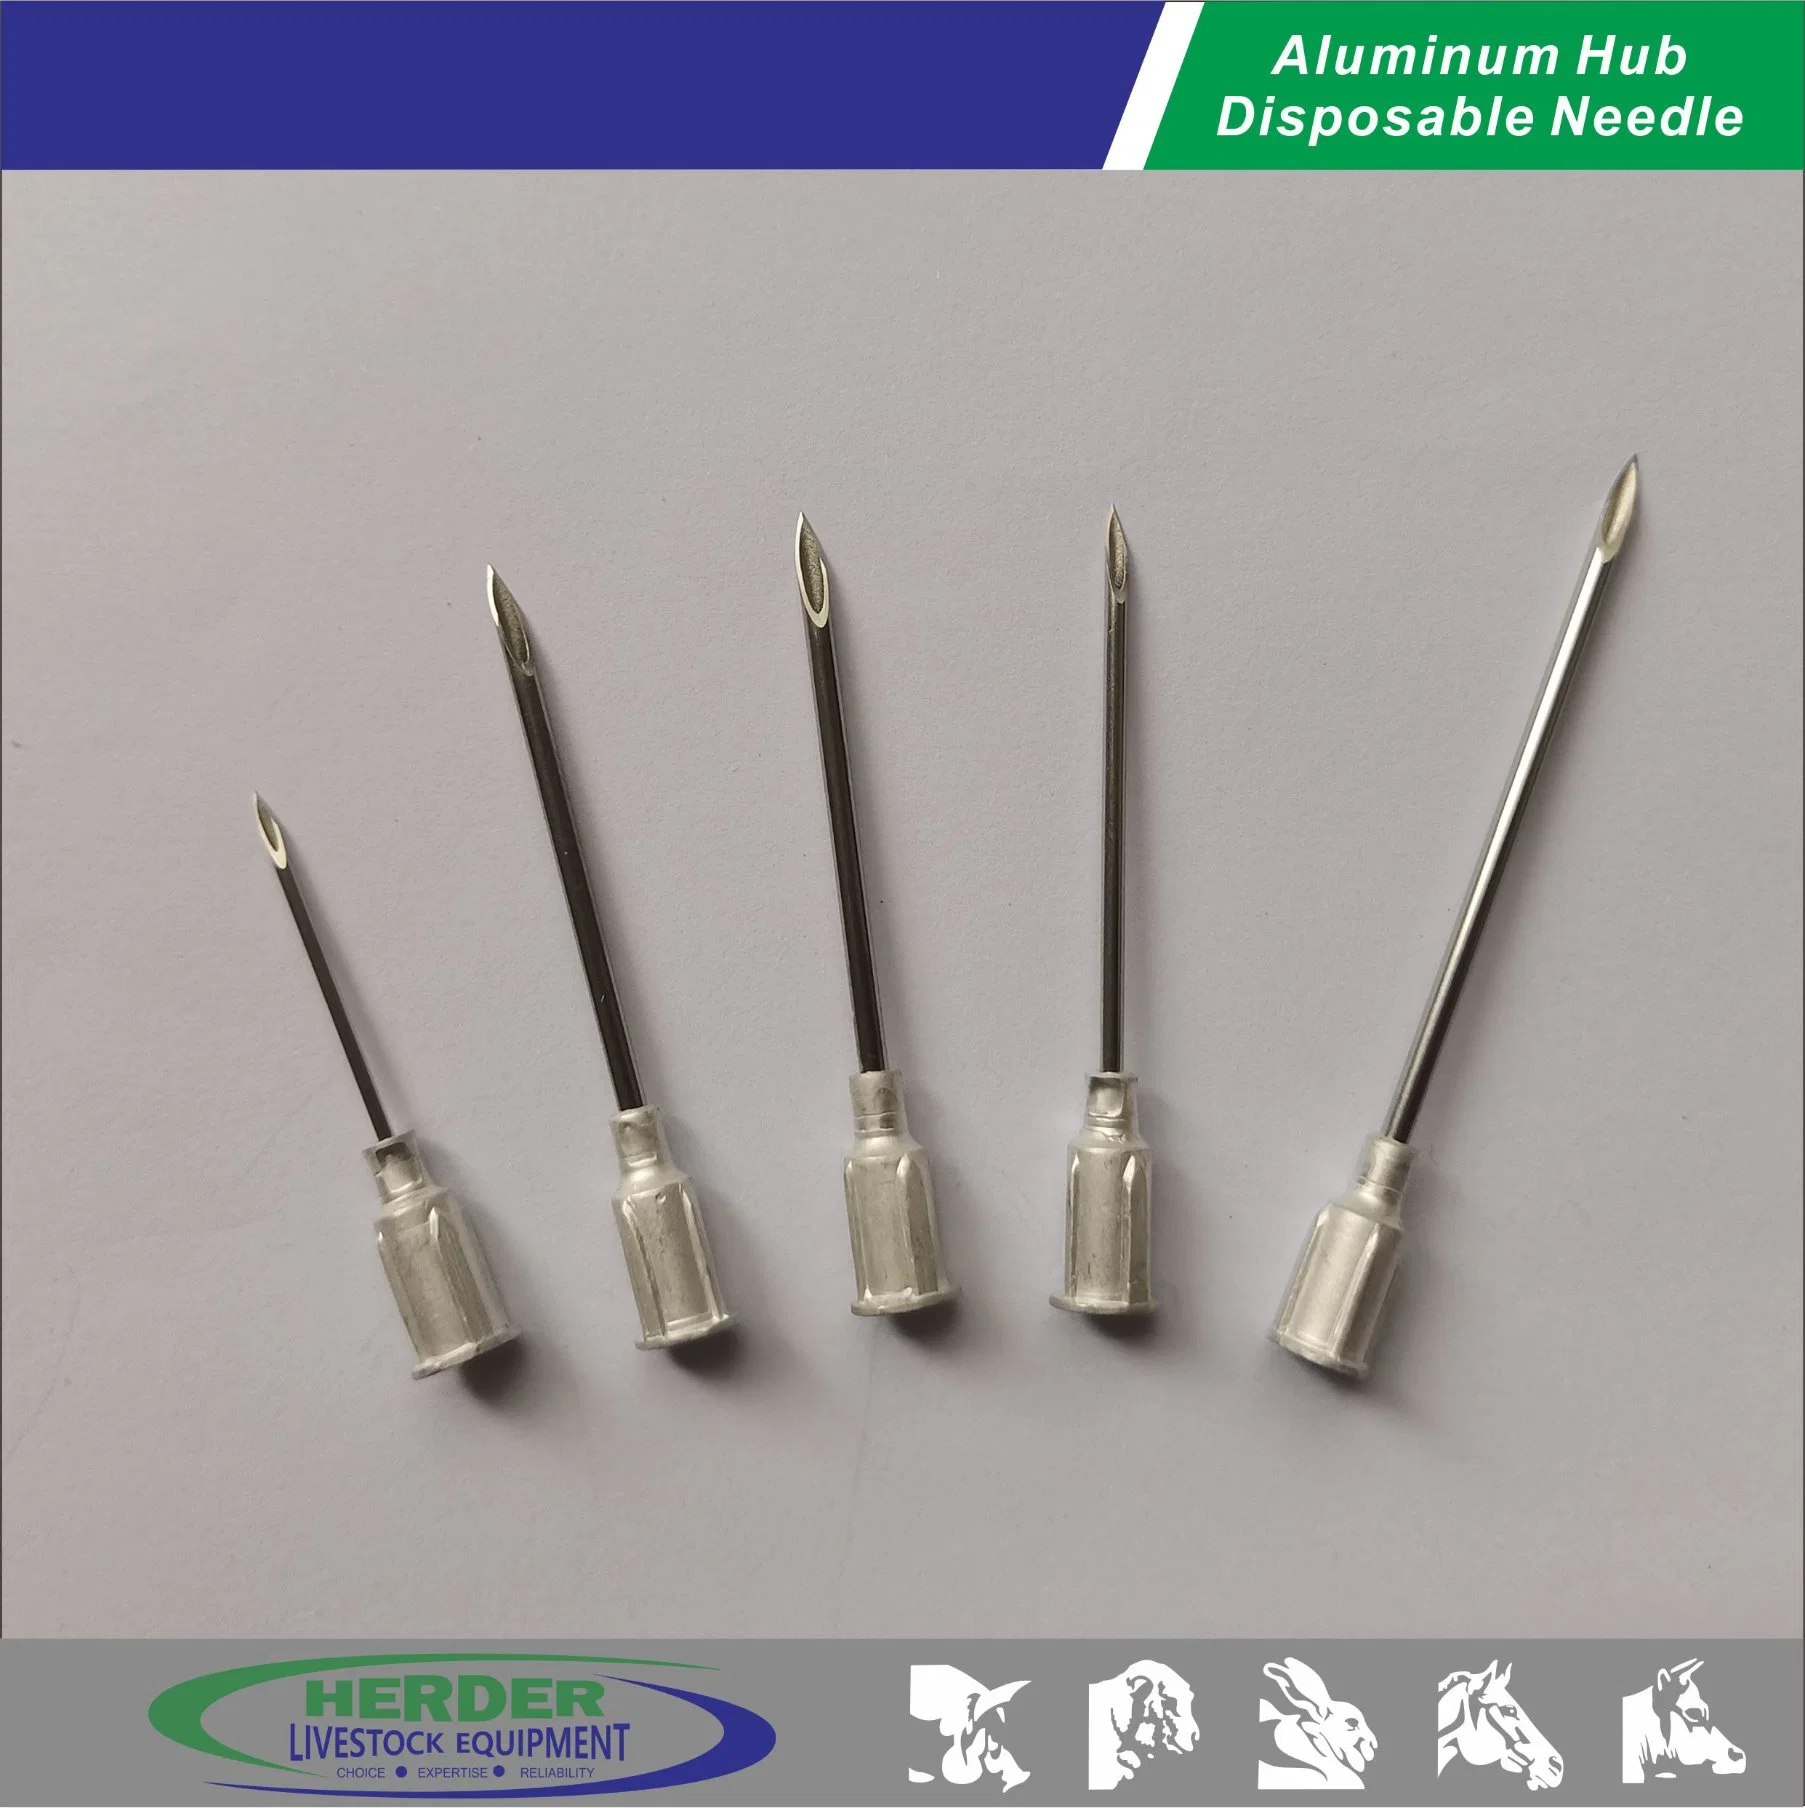 La ganadería buje de aluminio de aguja hipodérmica veterinaria reutilizables.